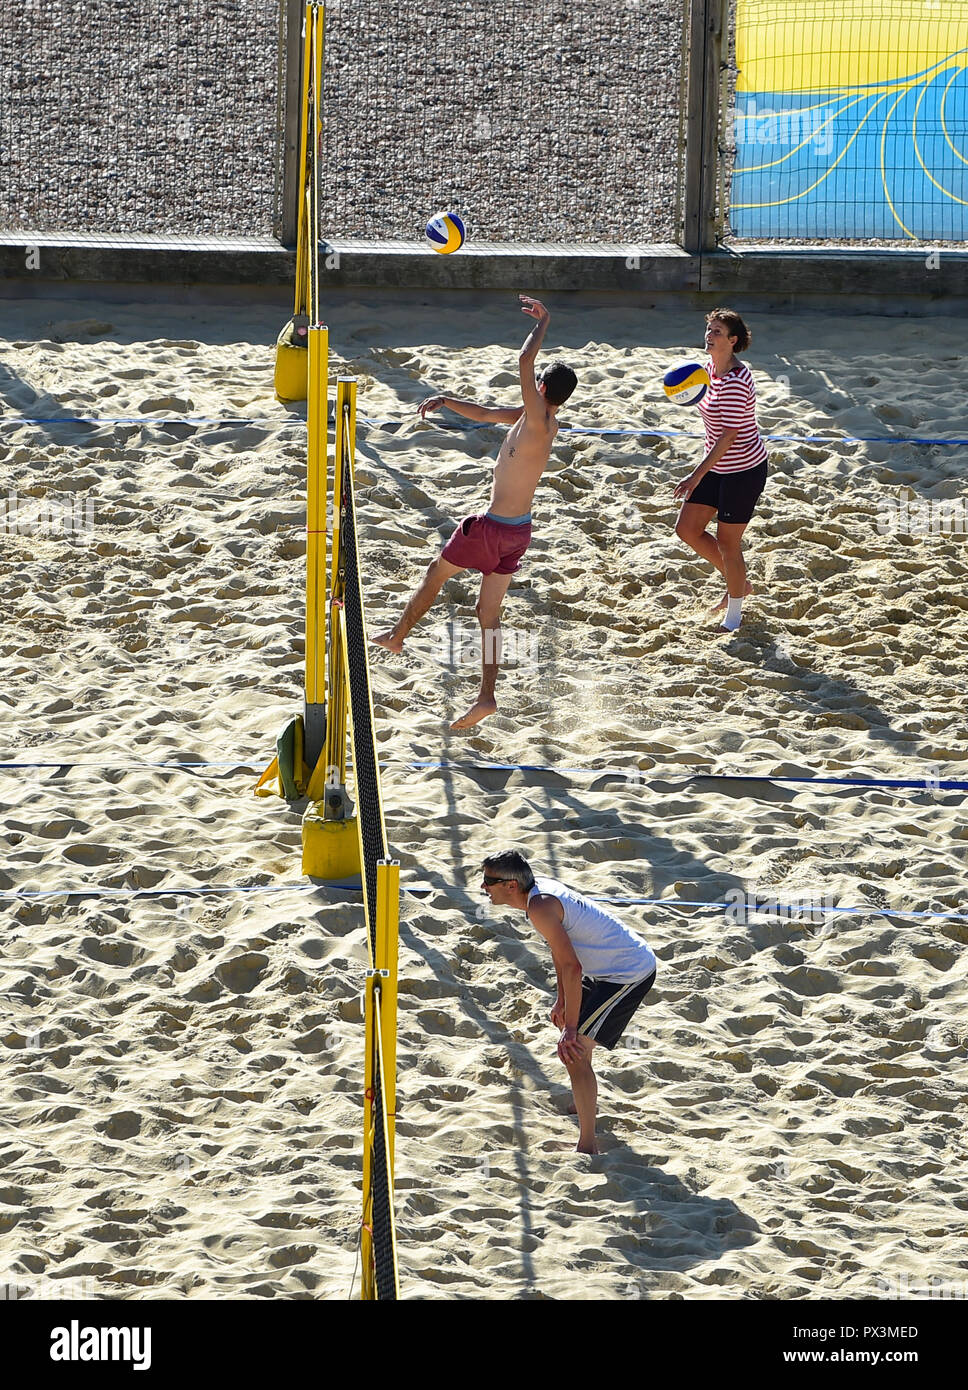 Brighton UK 19 octobre 2018 - Beach volley profiter du magnifique temps chaud et ensoleillé au Yellowave Center sur le front de mer de Brighton aujourd'hui Crédit : Simon Dack/Alamy Live News Banque D'Images